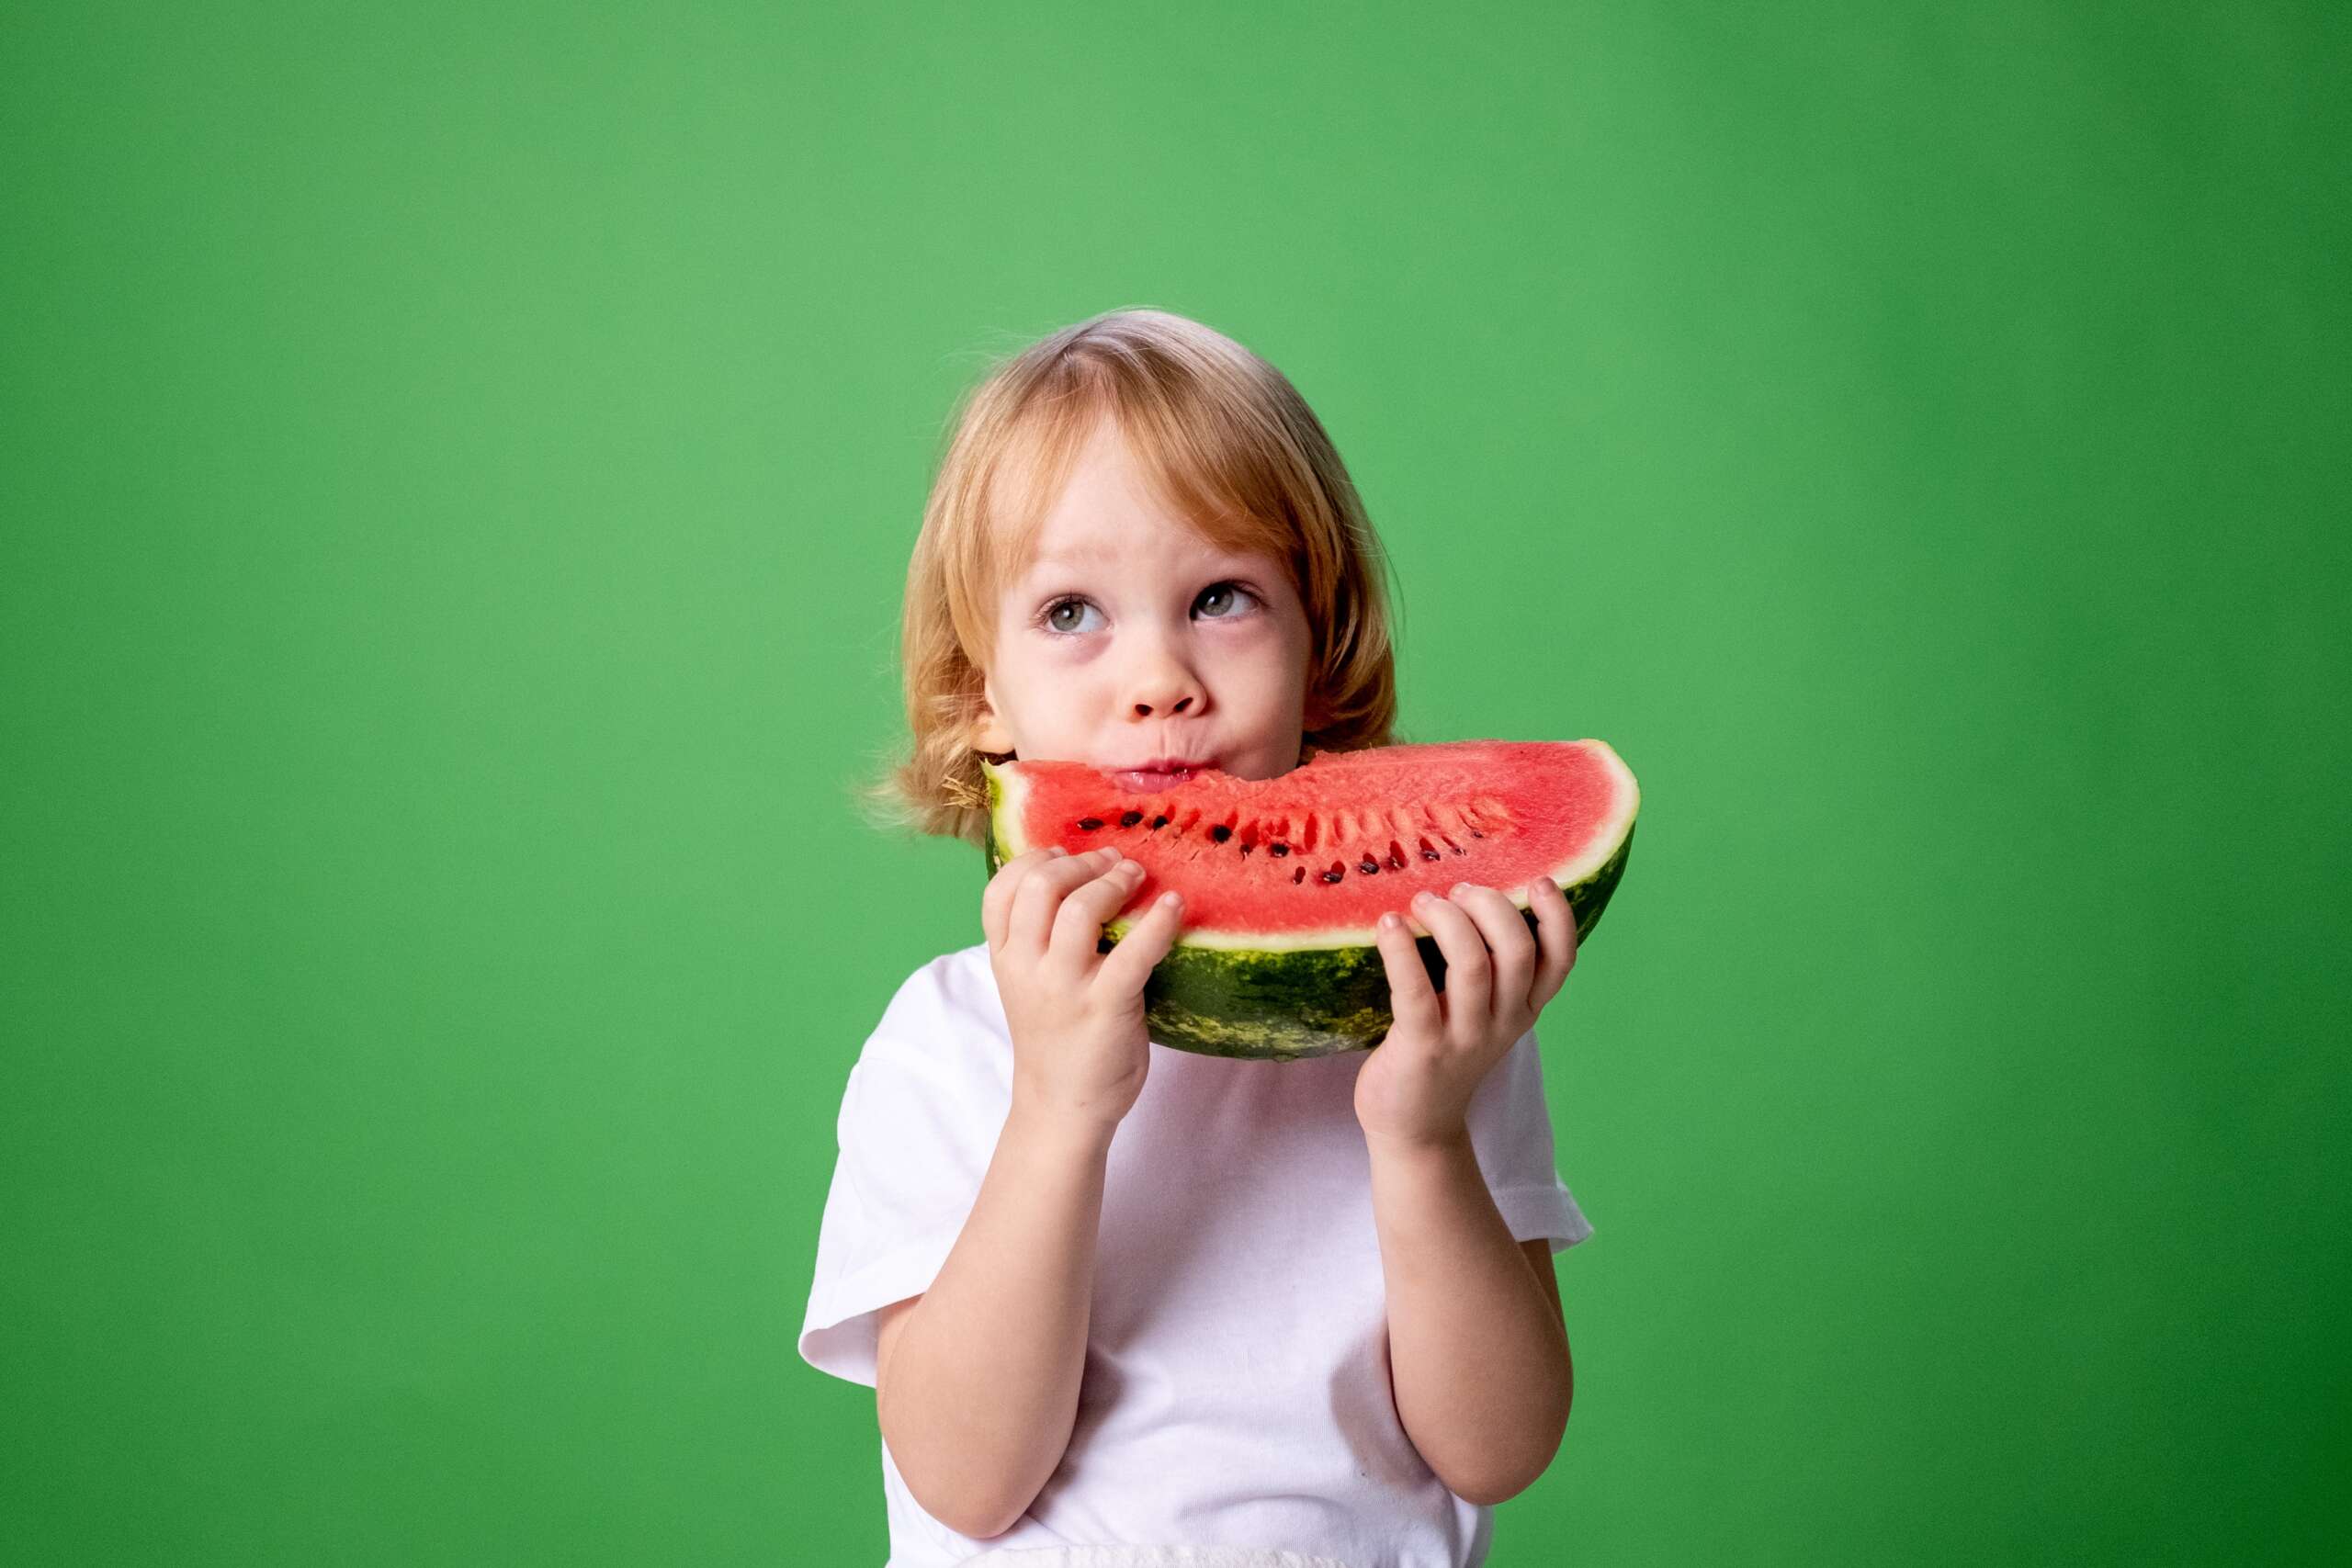 Jak powinna wyglądać zdrowa dieta każdego dziecka?